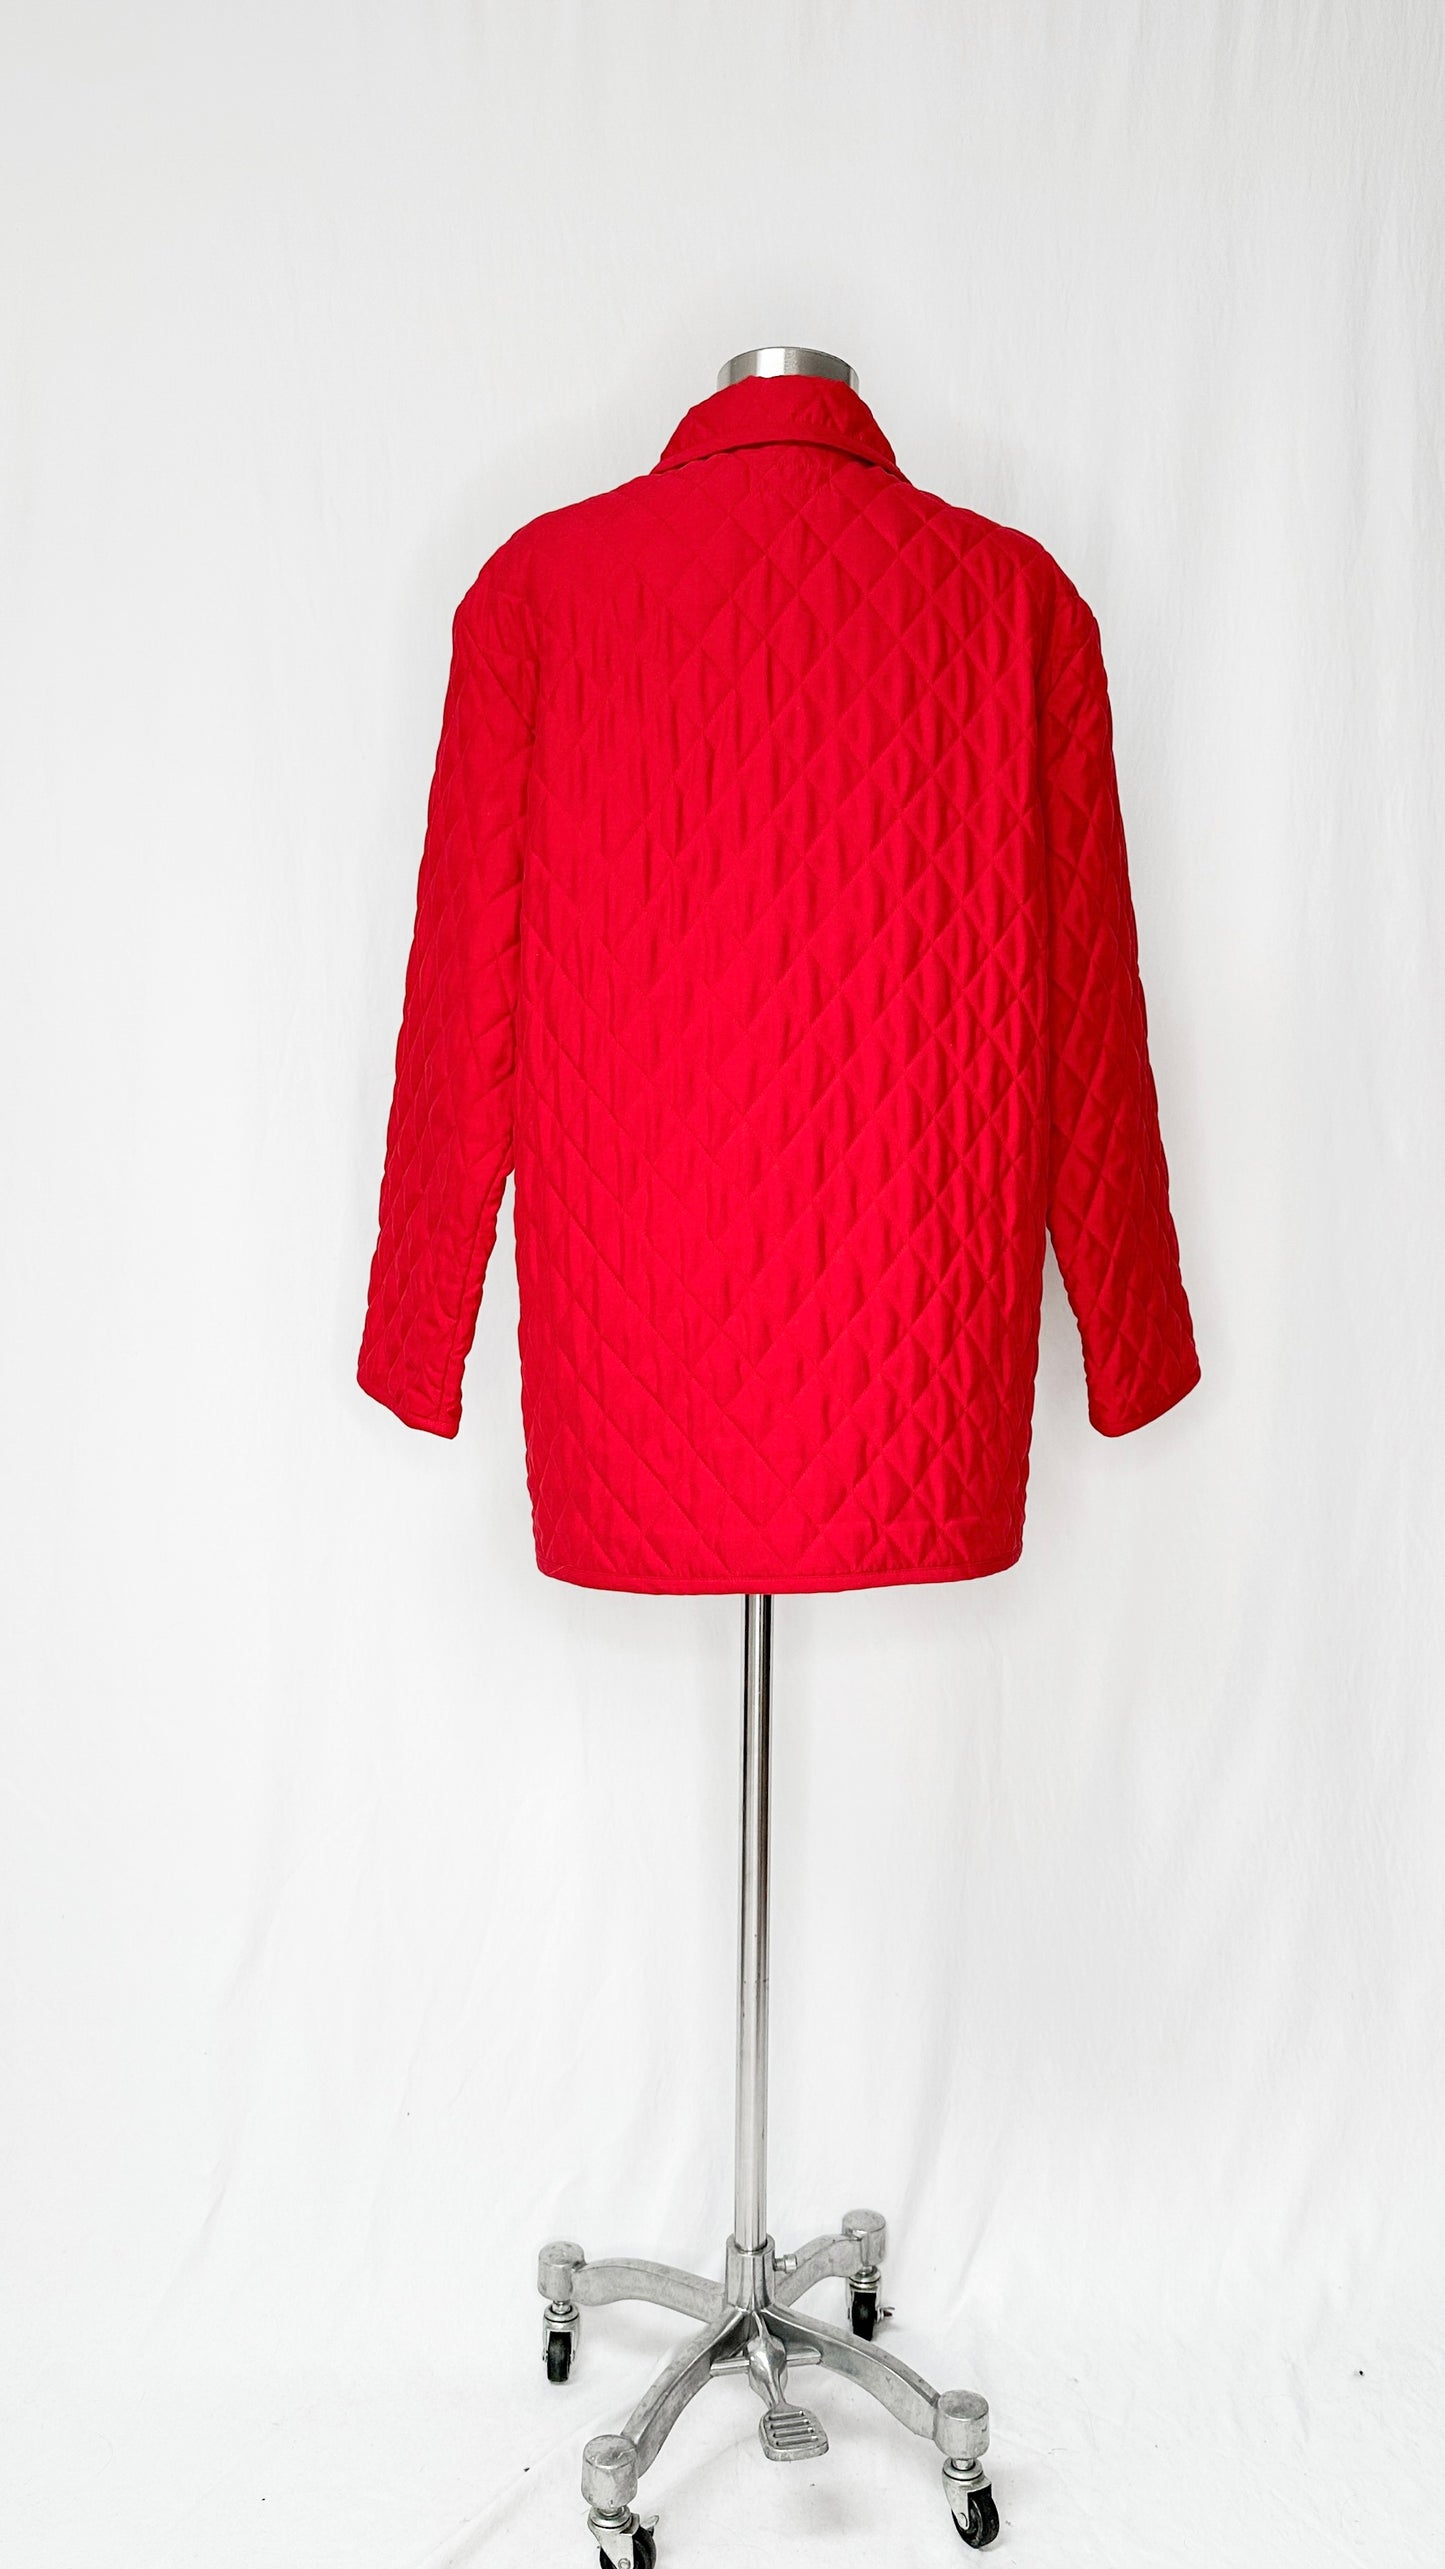 Vintage Pendleton Red Quilted Jacket (M/L)